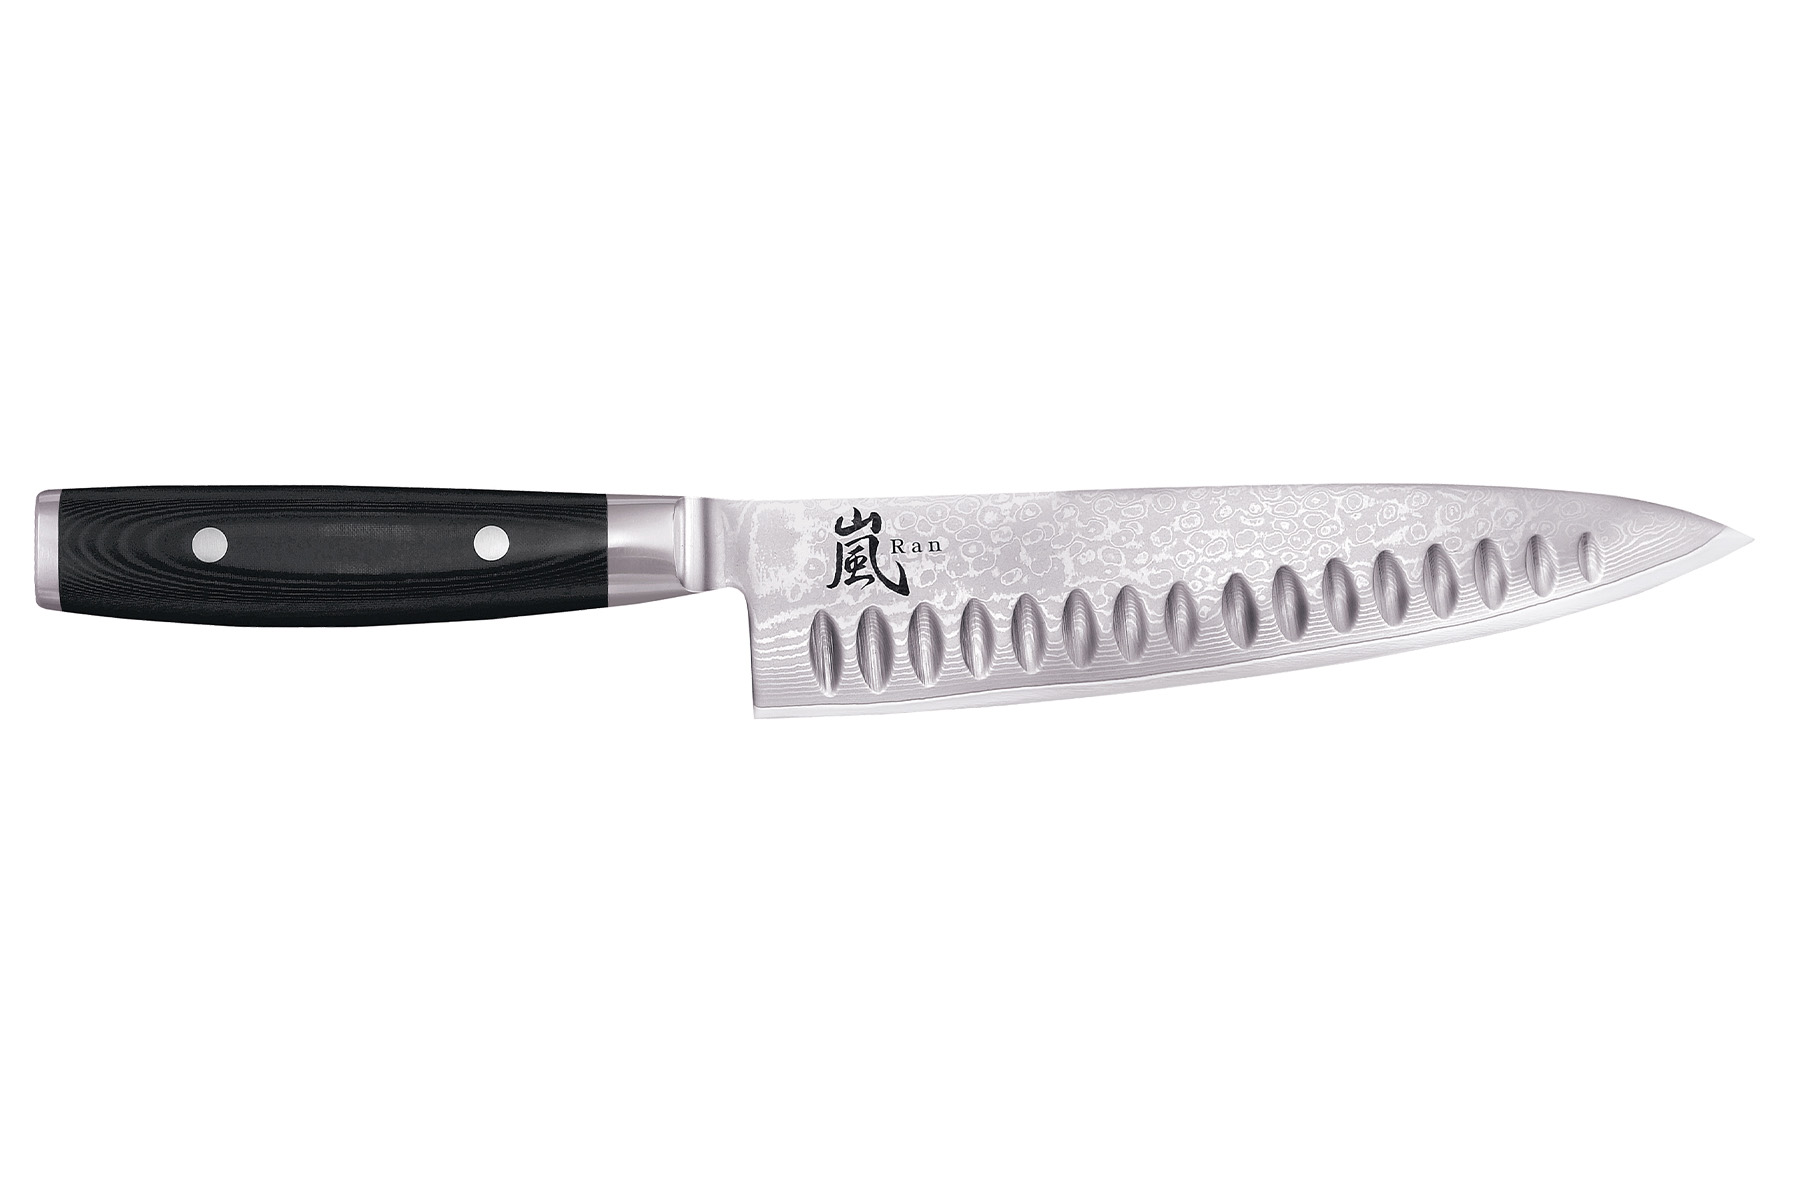 Couteau japonais Yaxell "Ran" - Couteau de chef lame alvole 20 cm